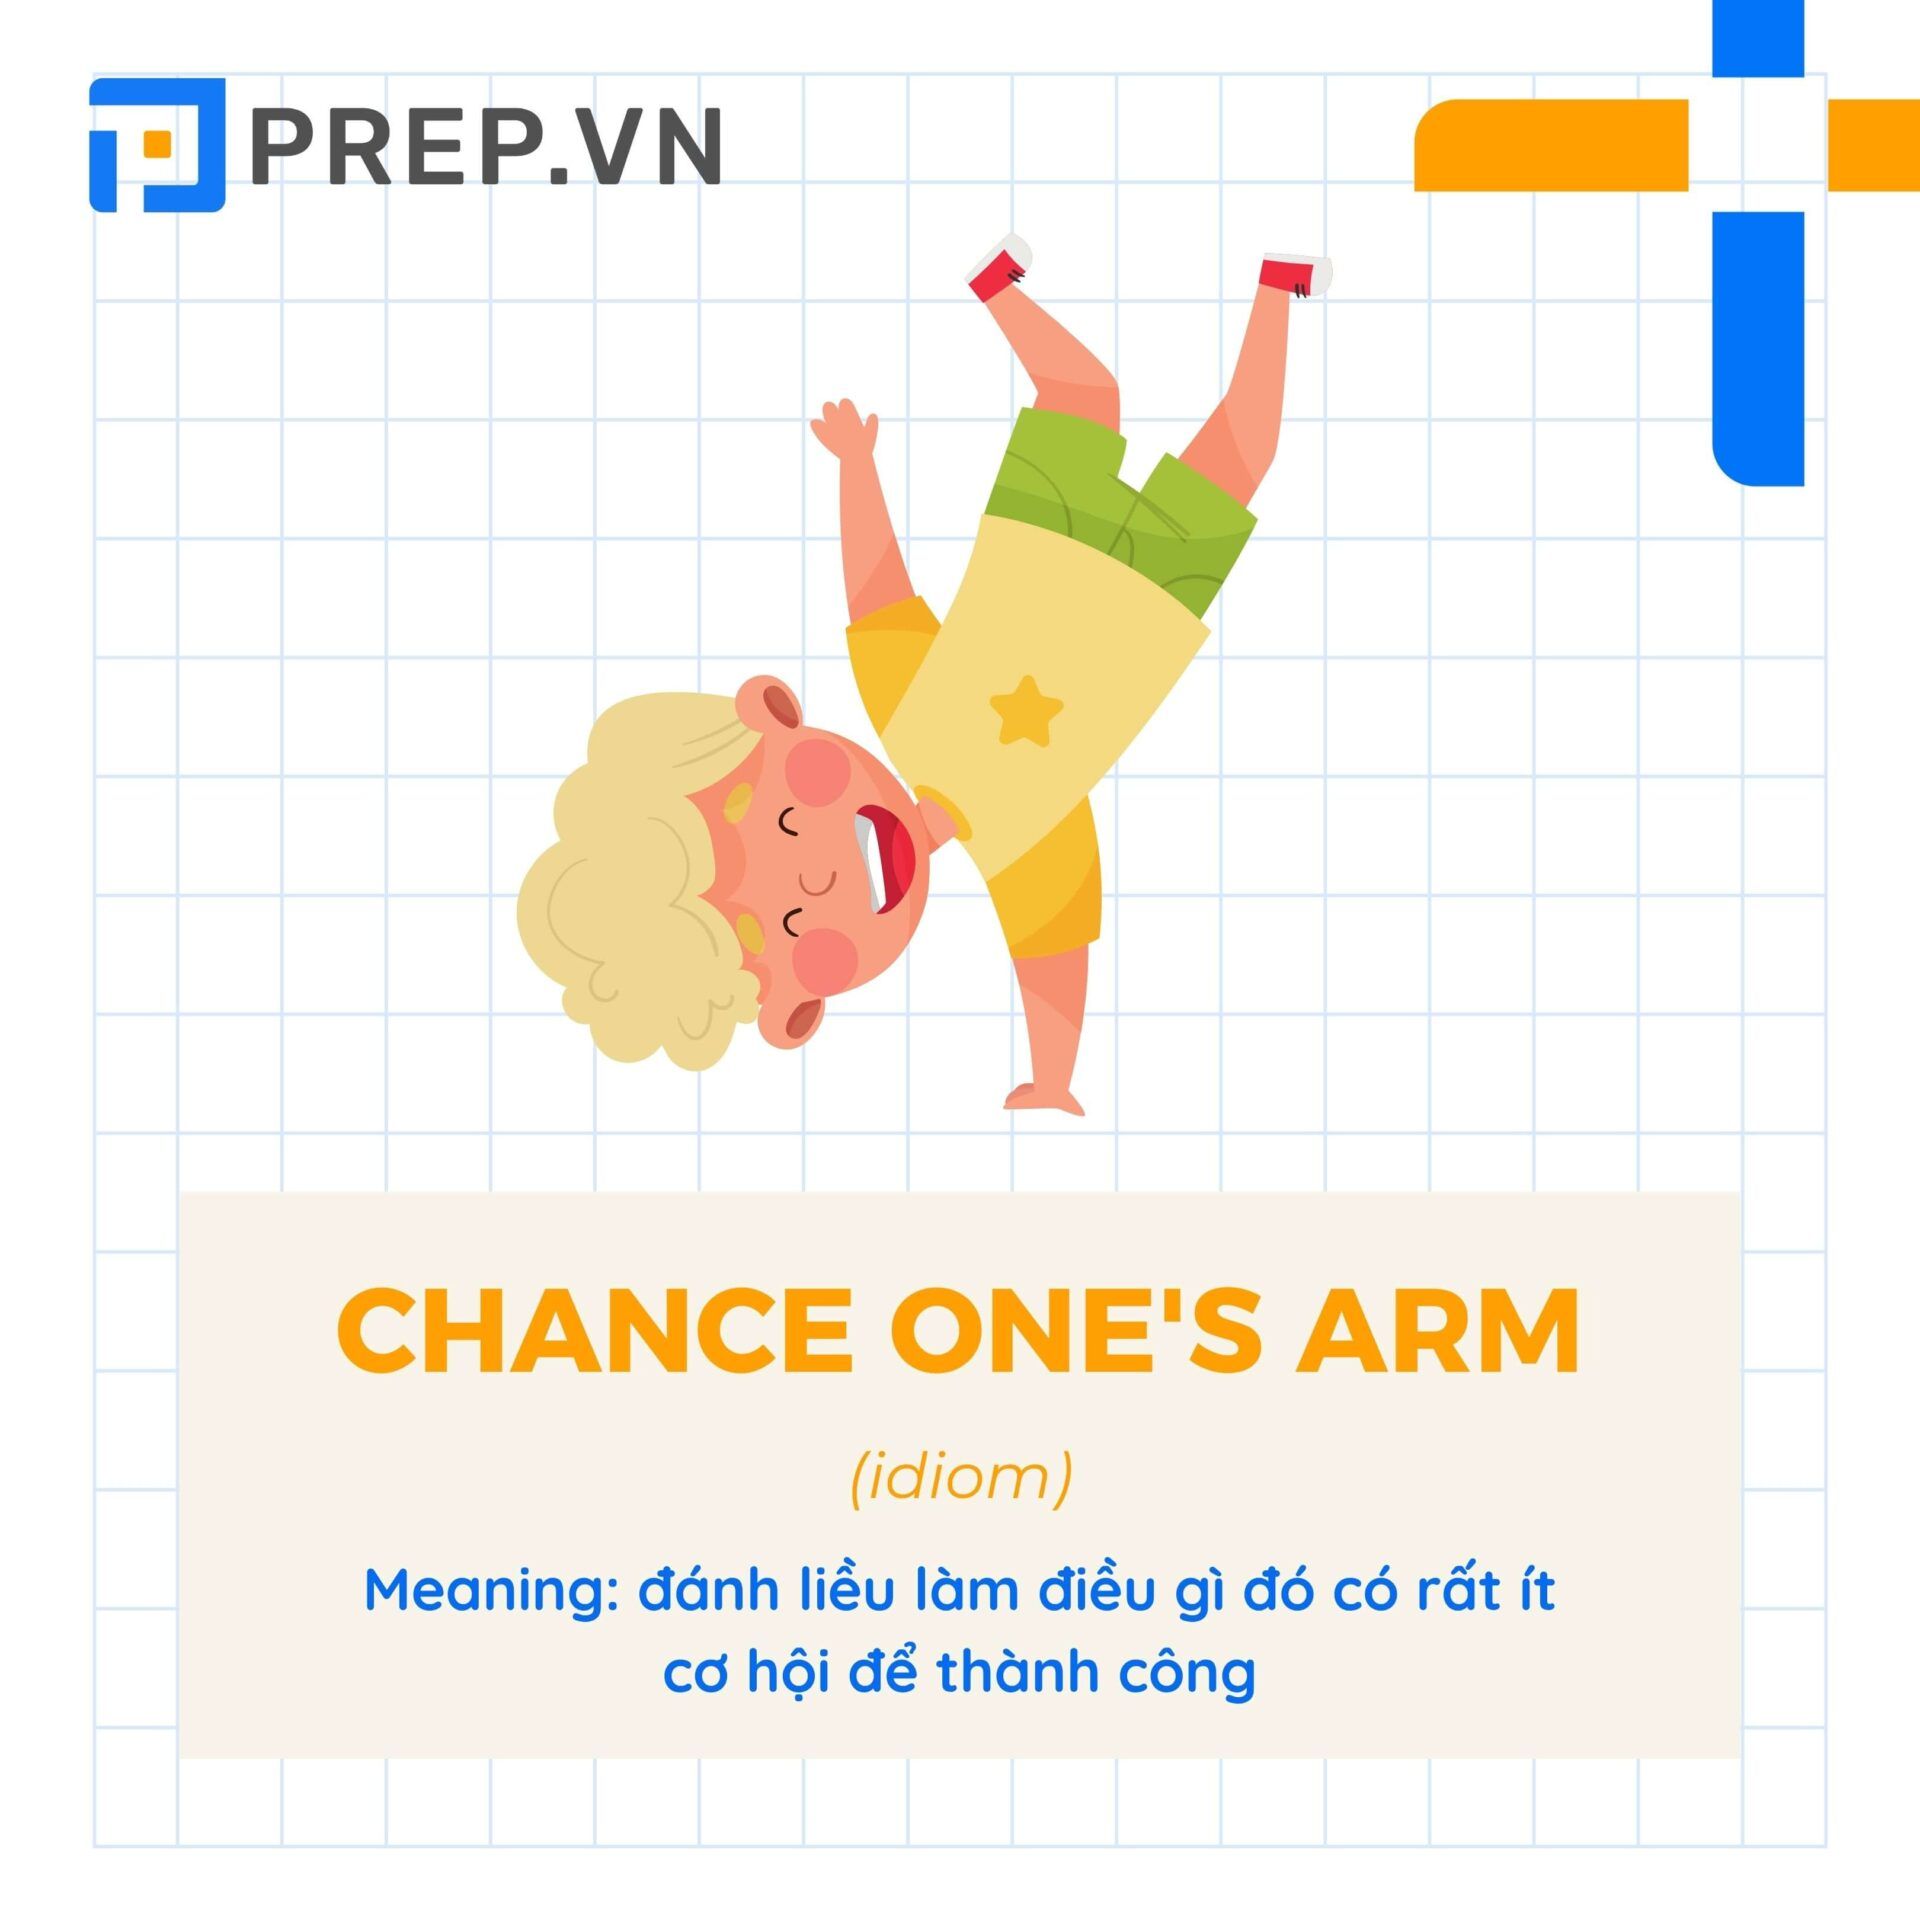 Thành ngữ "Chance one's arm"